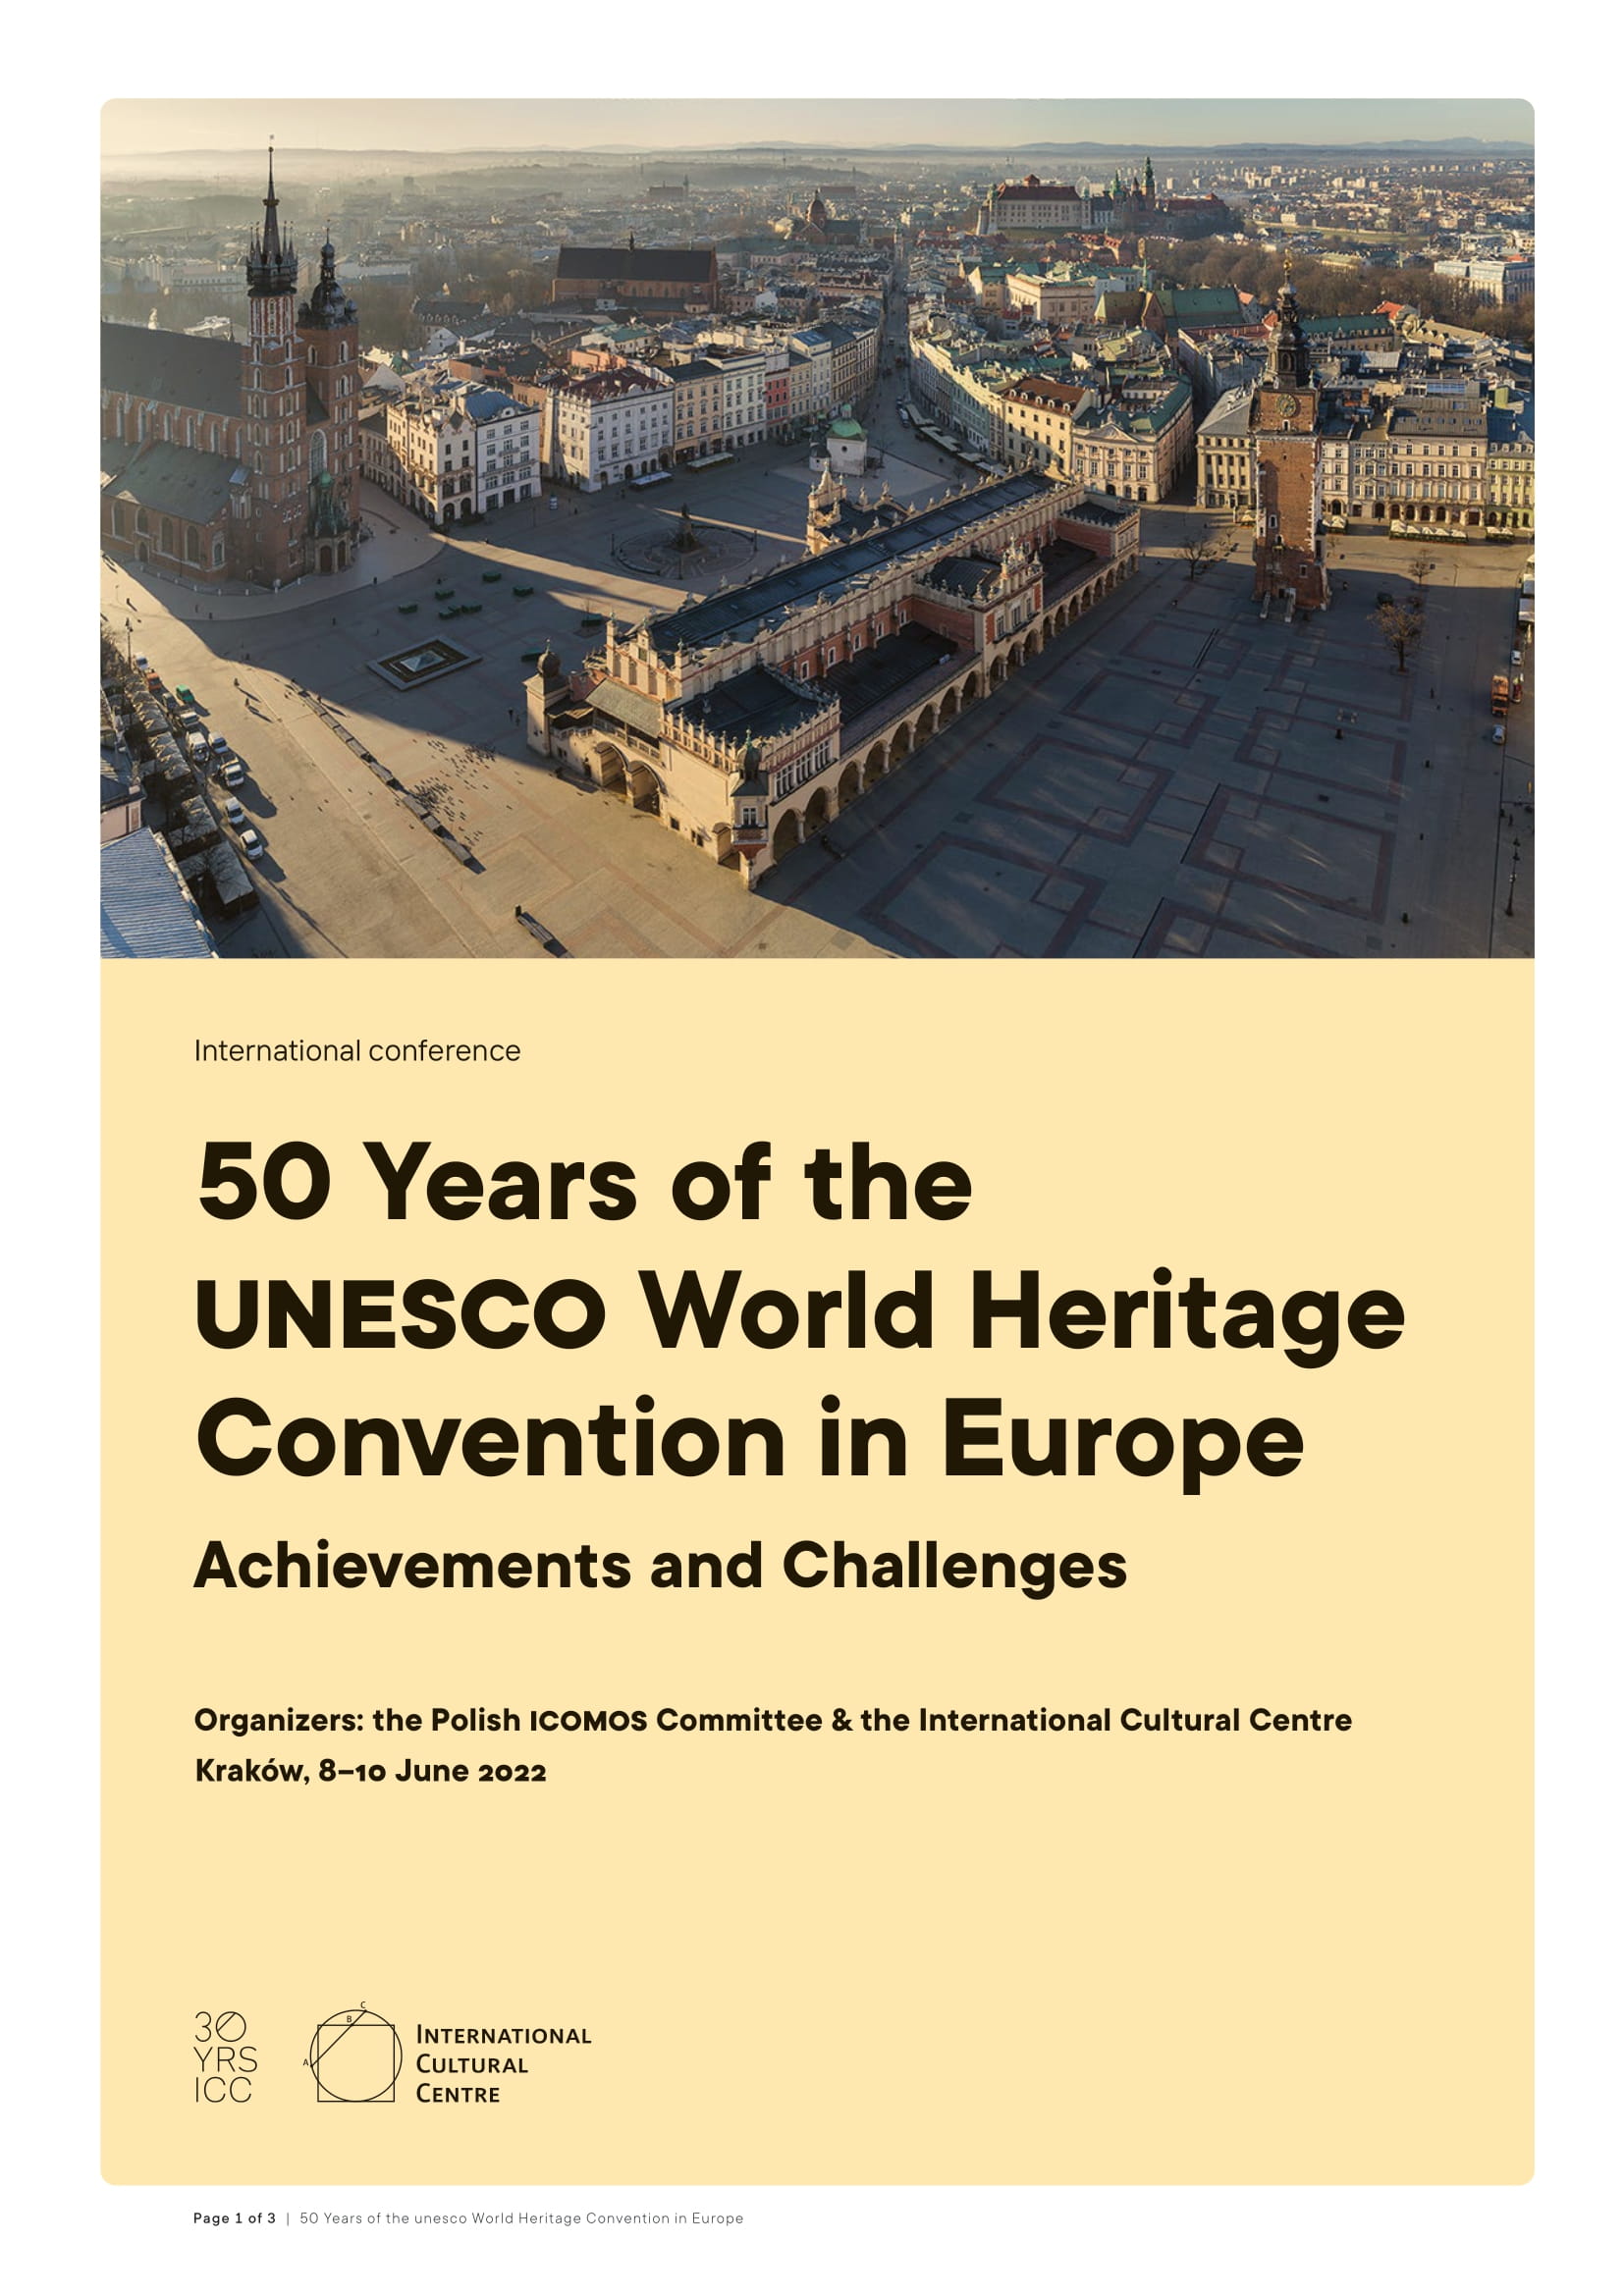 Cracovia: Conferenza “50 anni del patrimonio mondiale UNESCO”